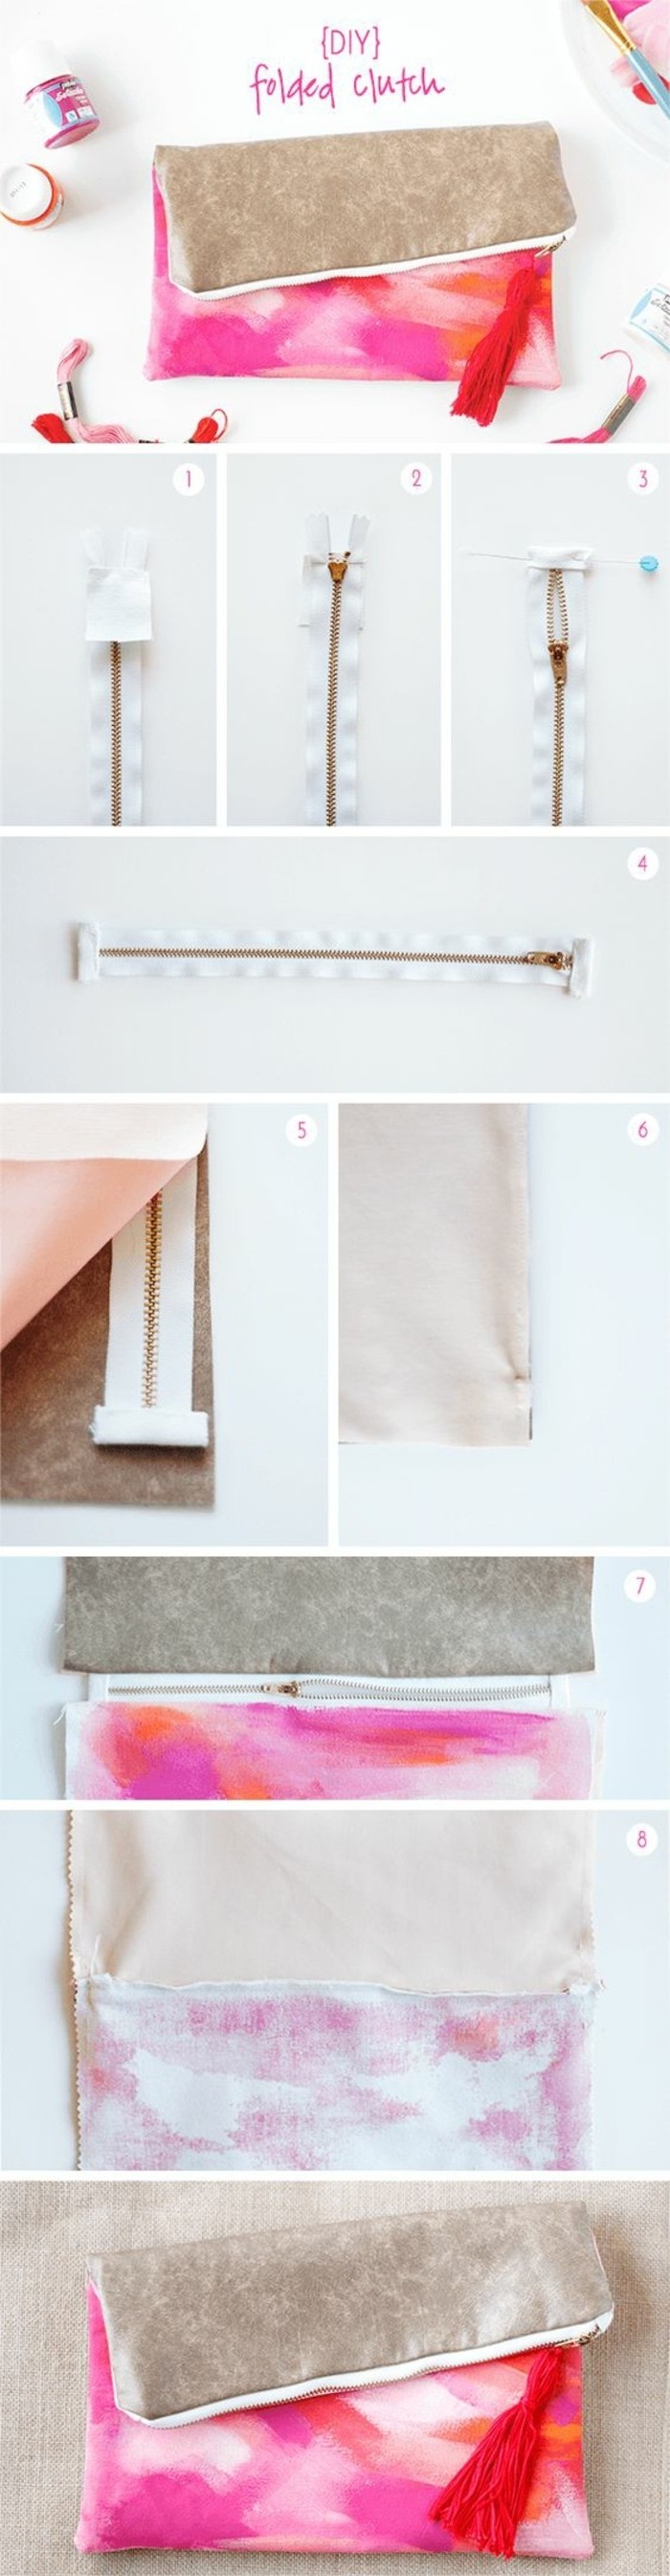 tuto-pochette-blanche-a-motifs-roses-à-faire-soi-meme-étapes-de-la-fabrication-d-un-modele-de-pochette-cousue-avec-une-fermeture-zippée